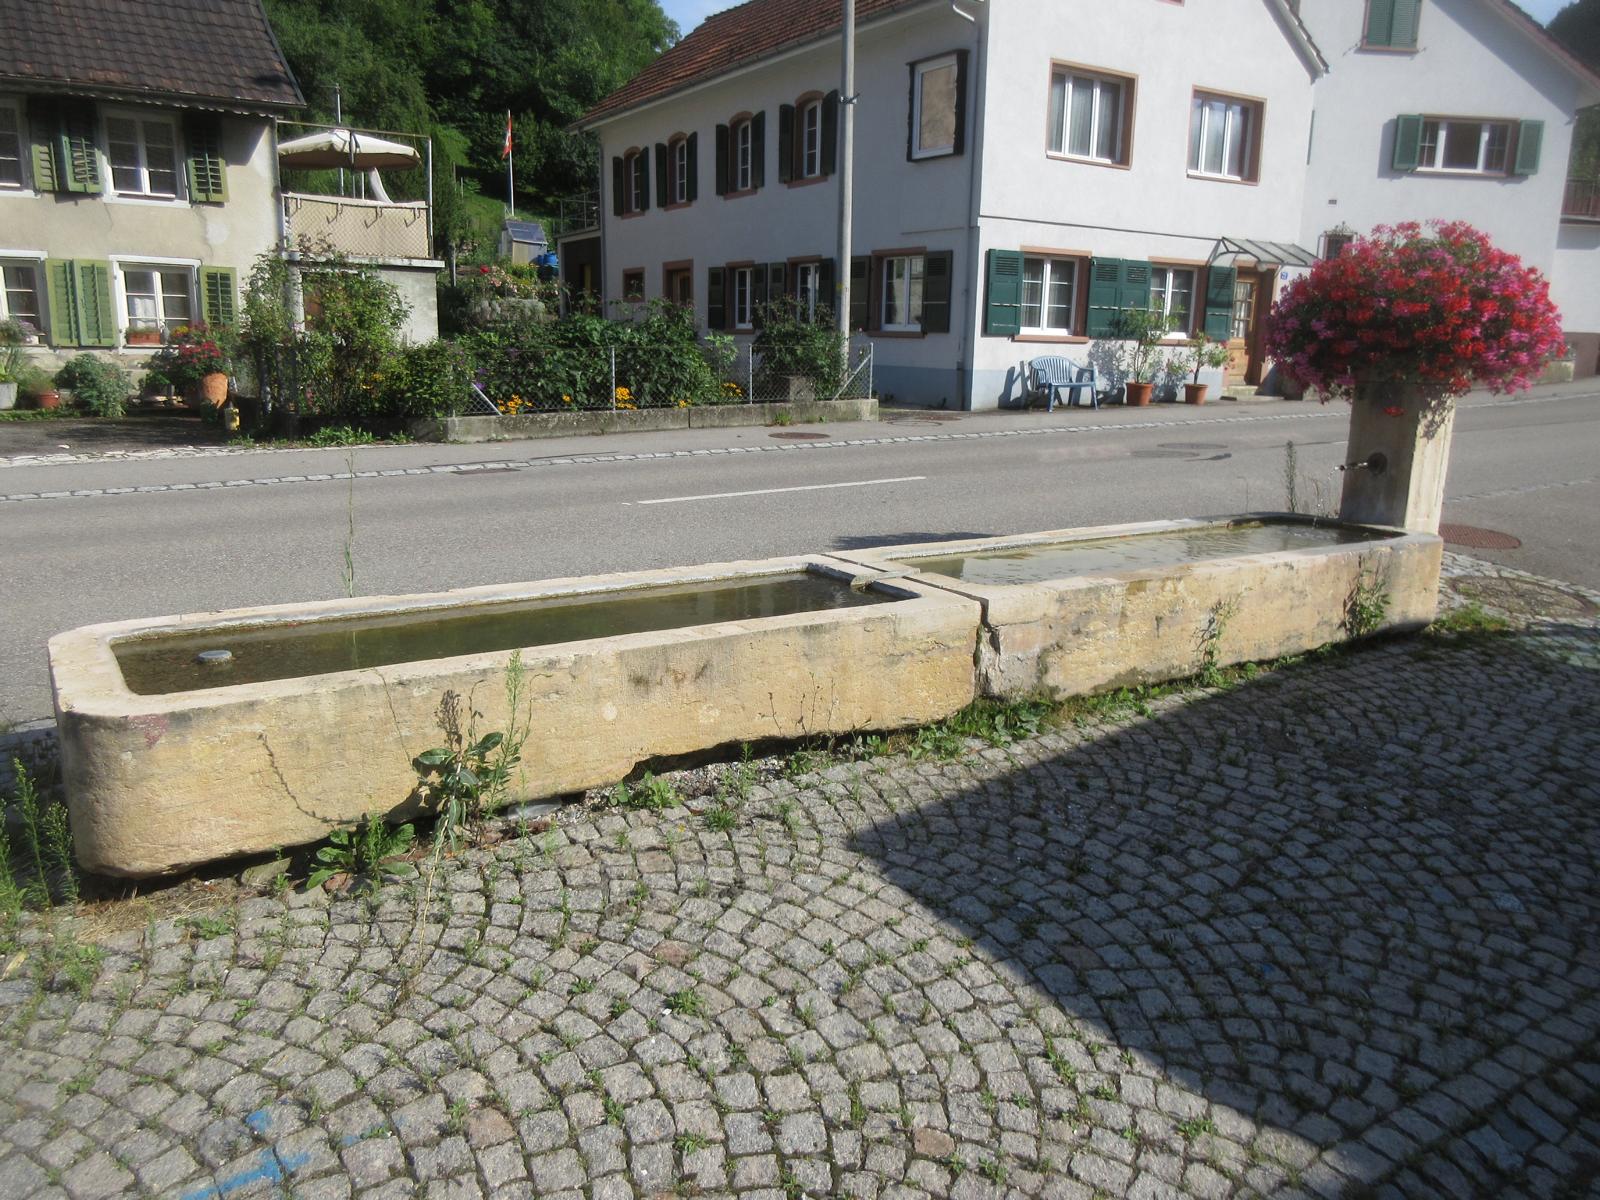 Ungerdorf / Hauptstrasse 40 *** o.J. (19. Jh.?) *** Laufener Kalkstein (2 monolithische Becken total 5.8 x 1.0 m) *** Laufener Kalkstein *** Ehemaliges Meltinger Mineralwasser speist heute die Dorfbrunnen.